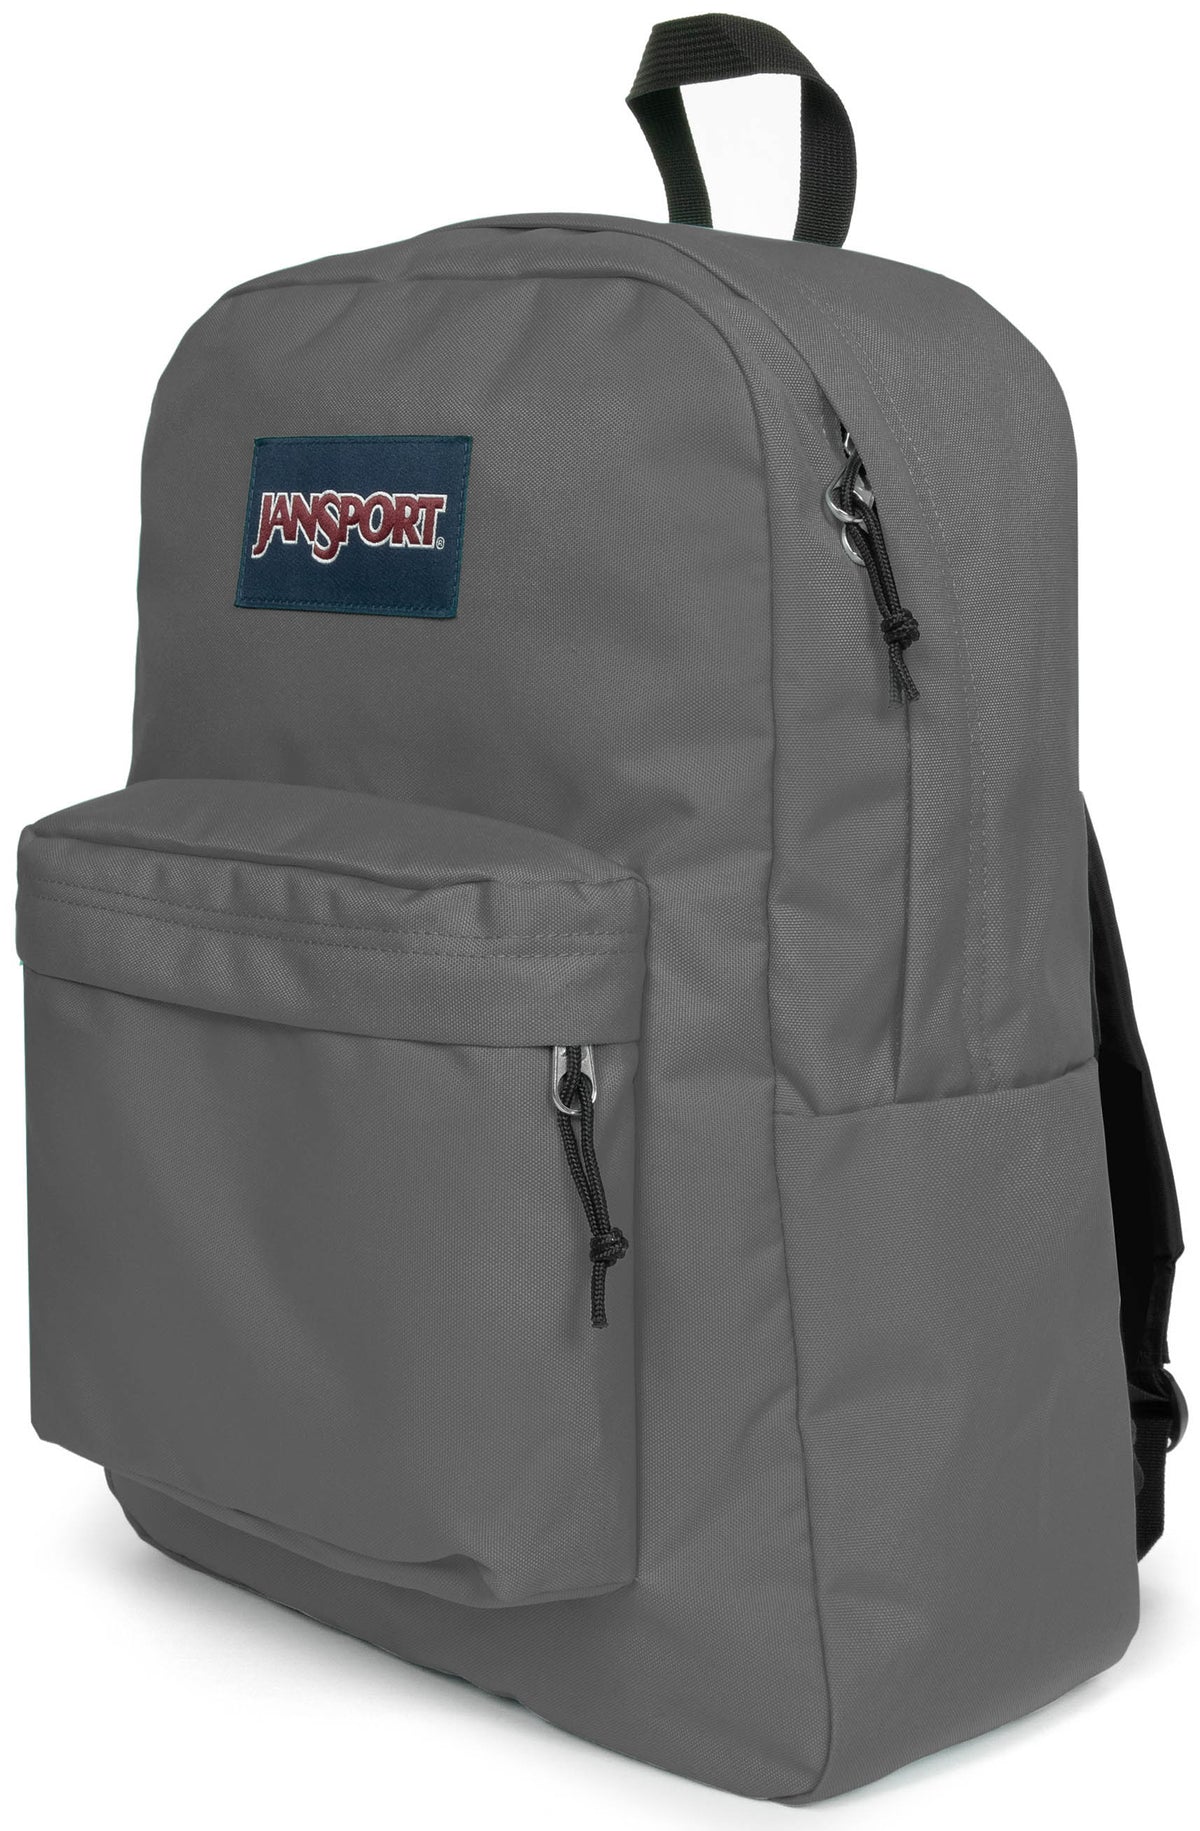 Jansport Superbreak One Backpack - Graphite Grey